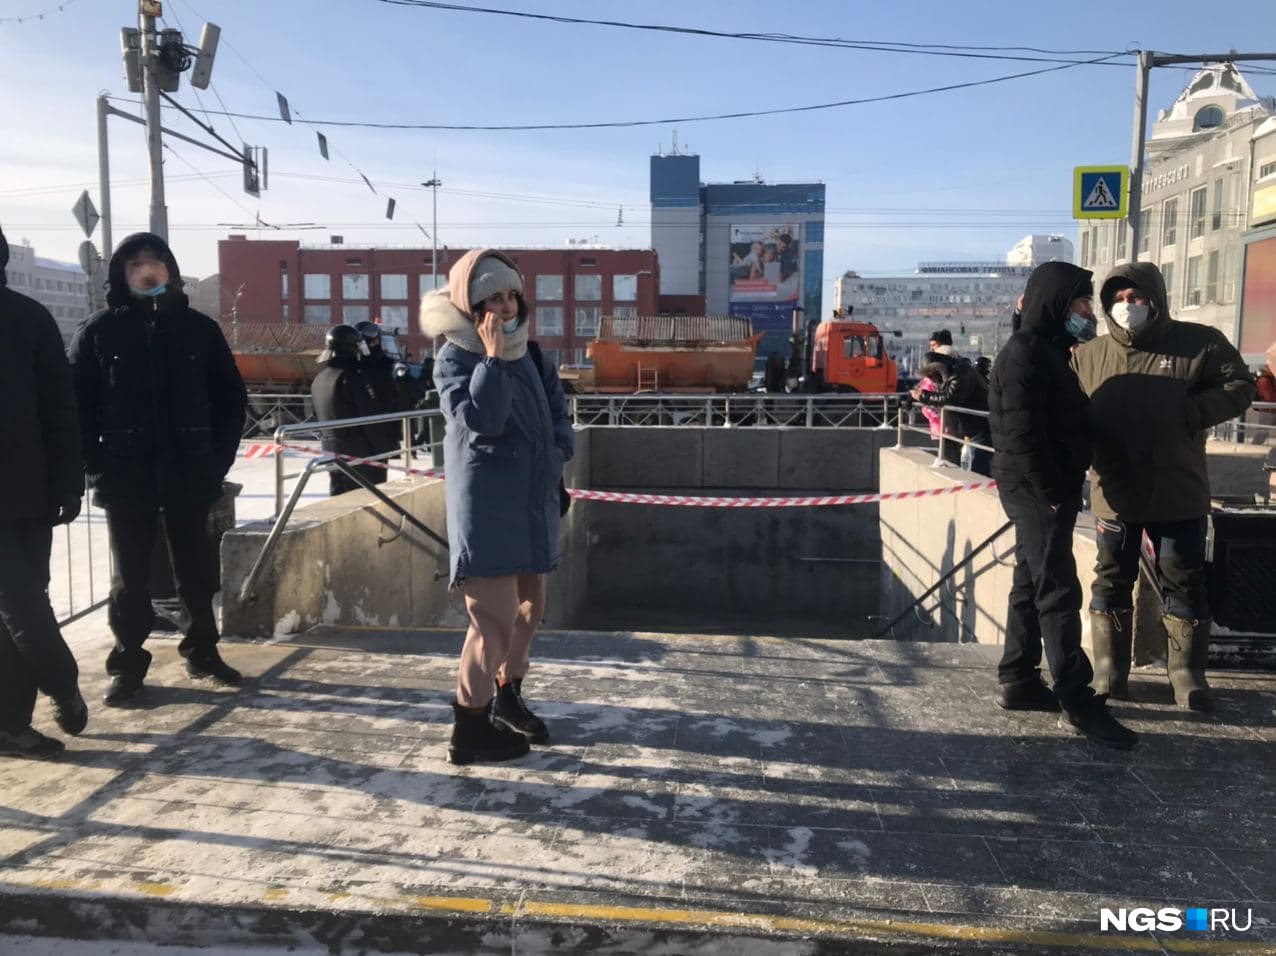 Свежие новости новосибирск сегодня нгс. Митинги в Новосибирске 2021. Закрытый Новосибирск. Митинг 31 января с высоты. Метро НГС новости.